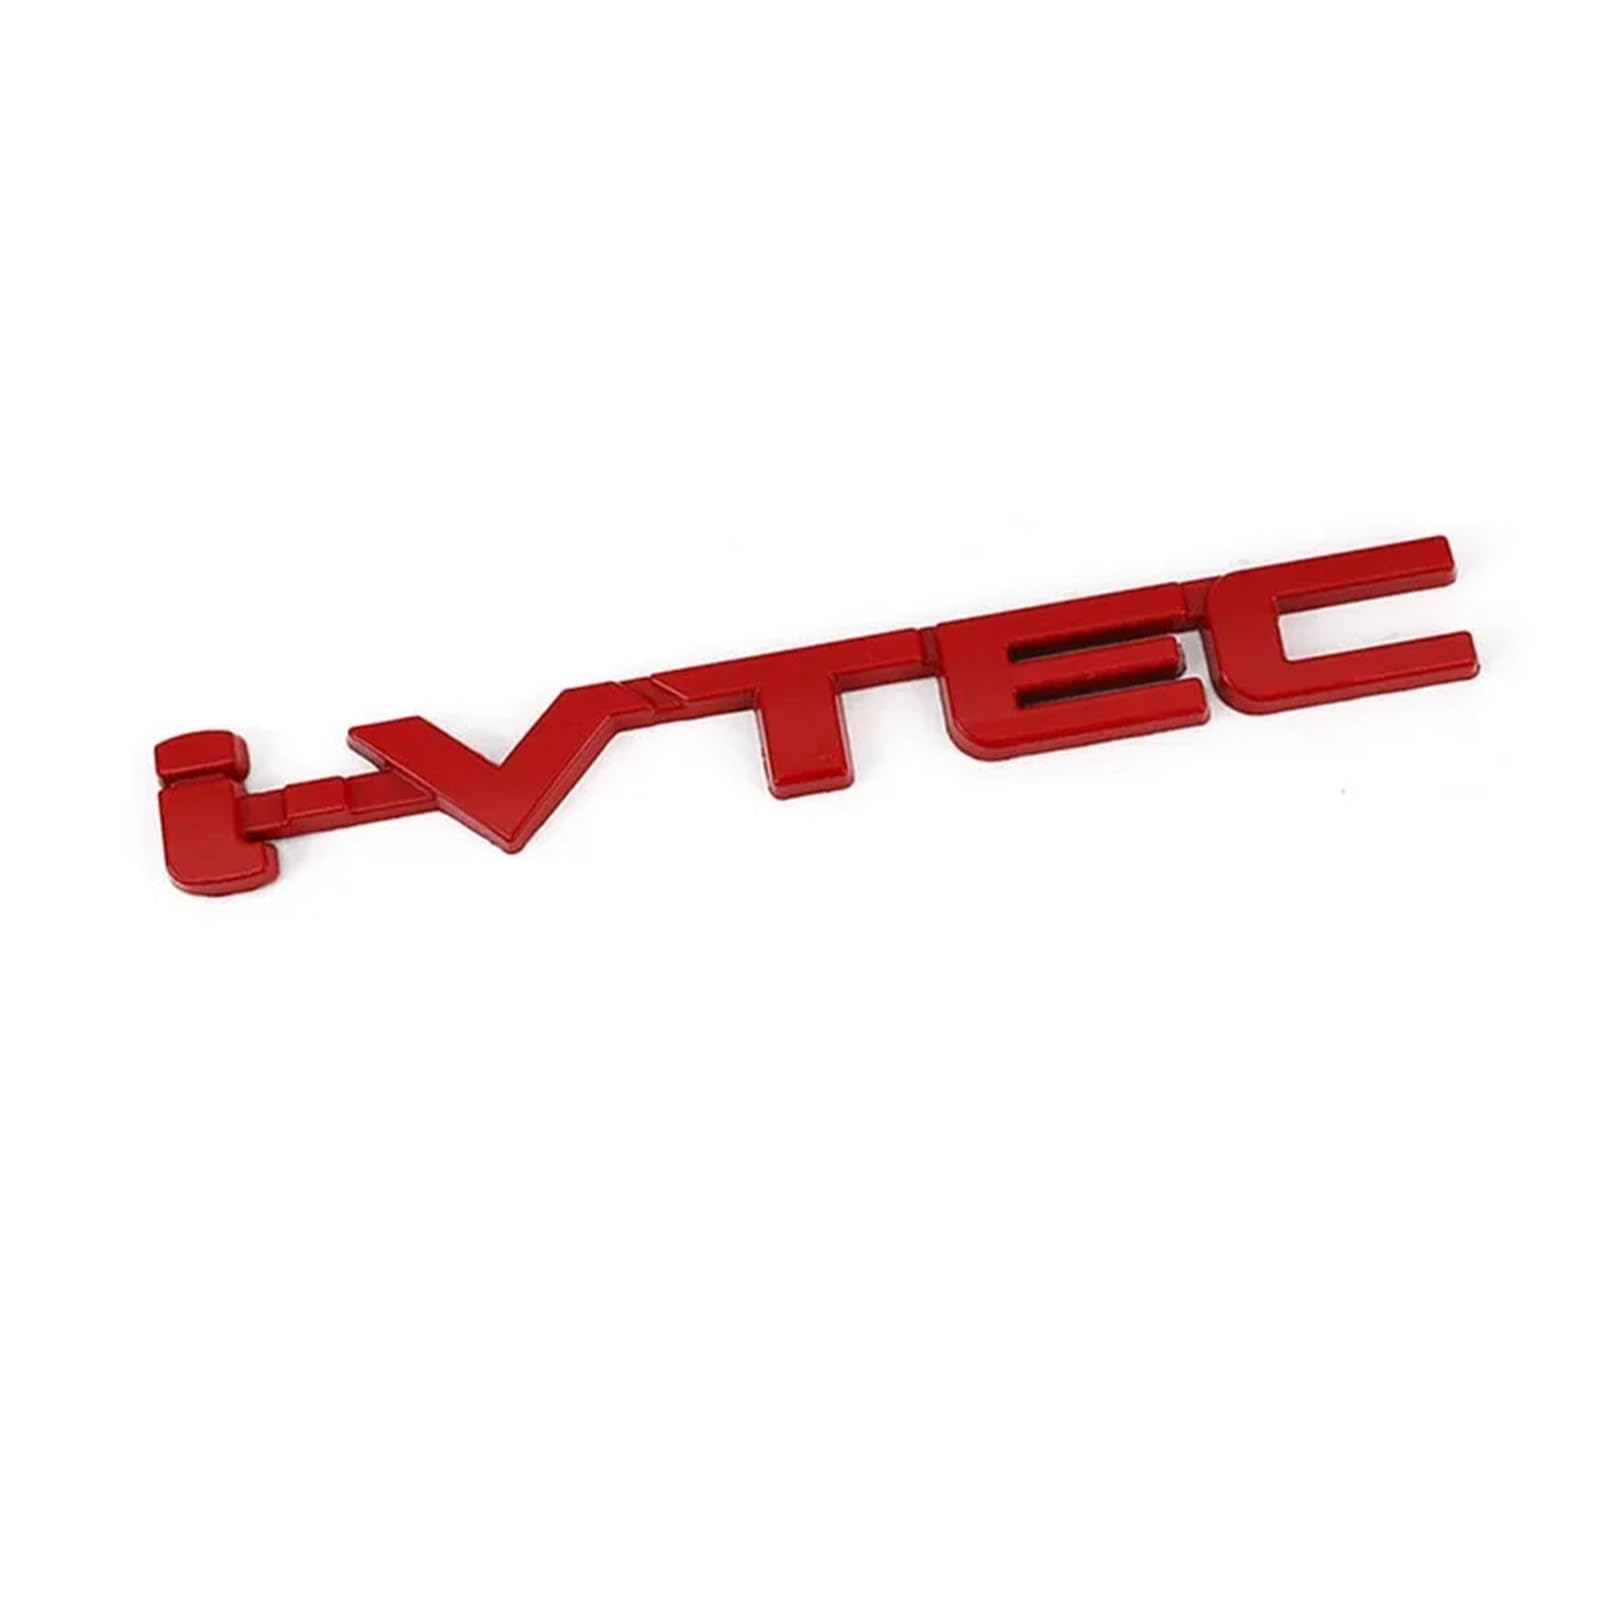 AQXYWQOL Autoaufkleber VTEC Emblem Aufkleber kompatibel mit I VTEC Badge Fit Accord Odyssey CRV HRV Außenzubehör Dekoration Farbe ist konstant, verblasst nicht und beschädigt(B Red) von AQXYWQOL